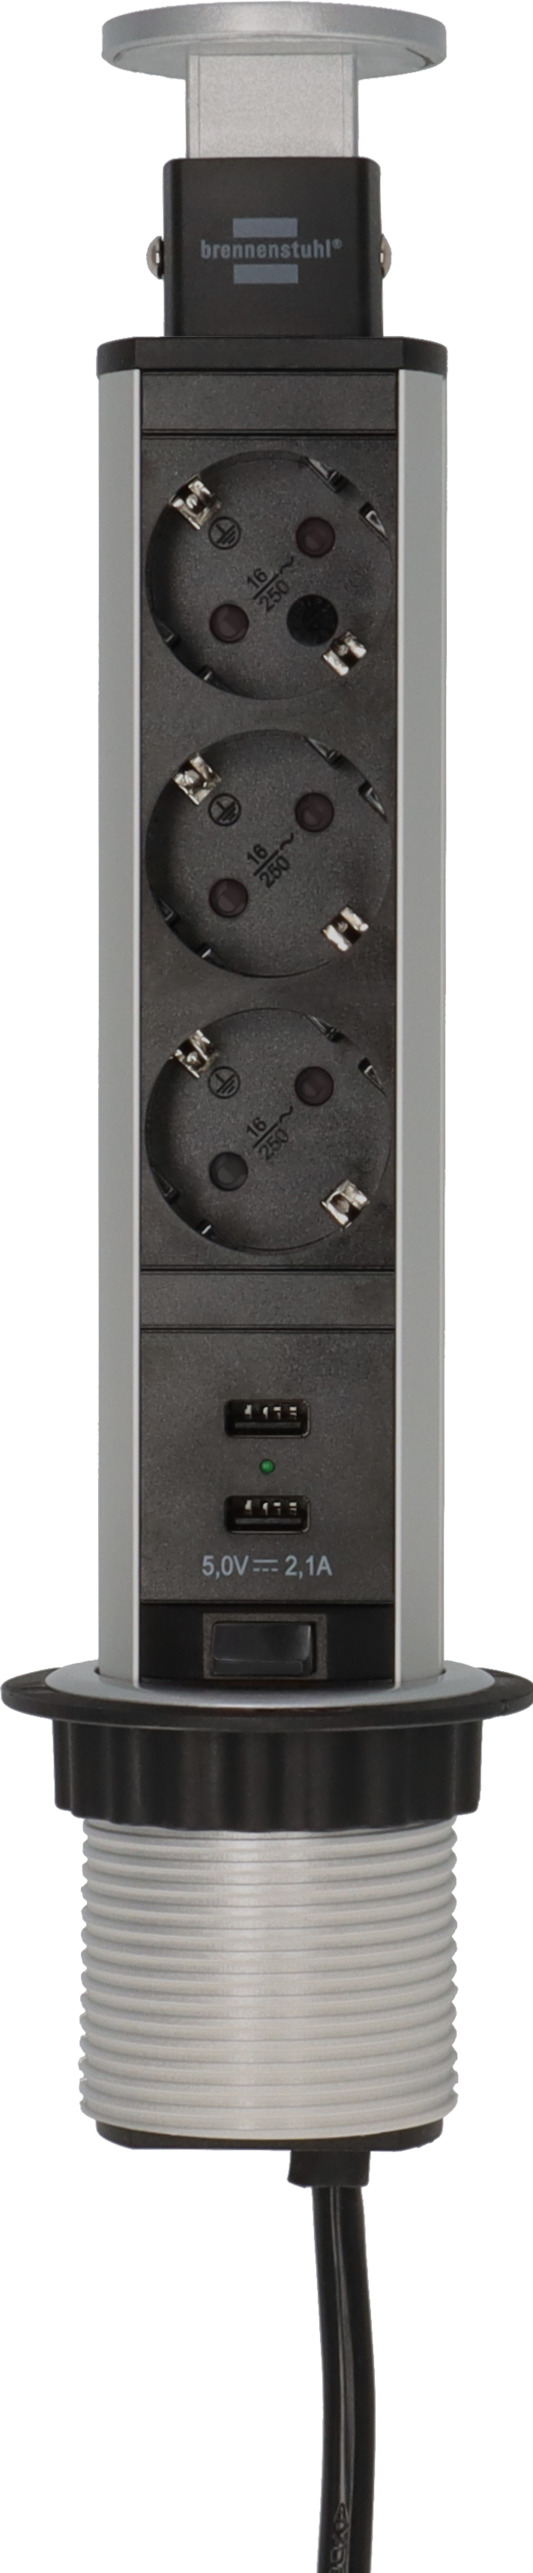 Brennenstuhl Tisch Steckdosenleiste Steckdose Verteiler 2-fach + USB ,  29,49 €